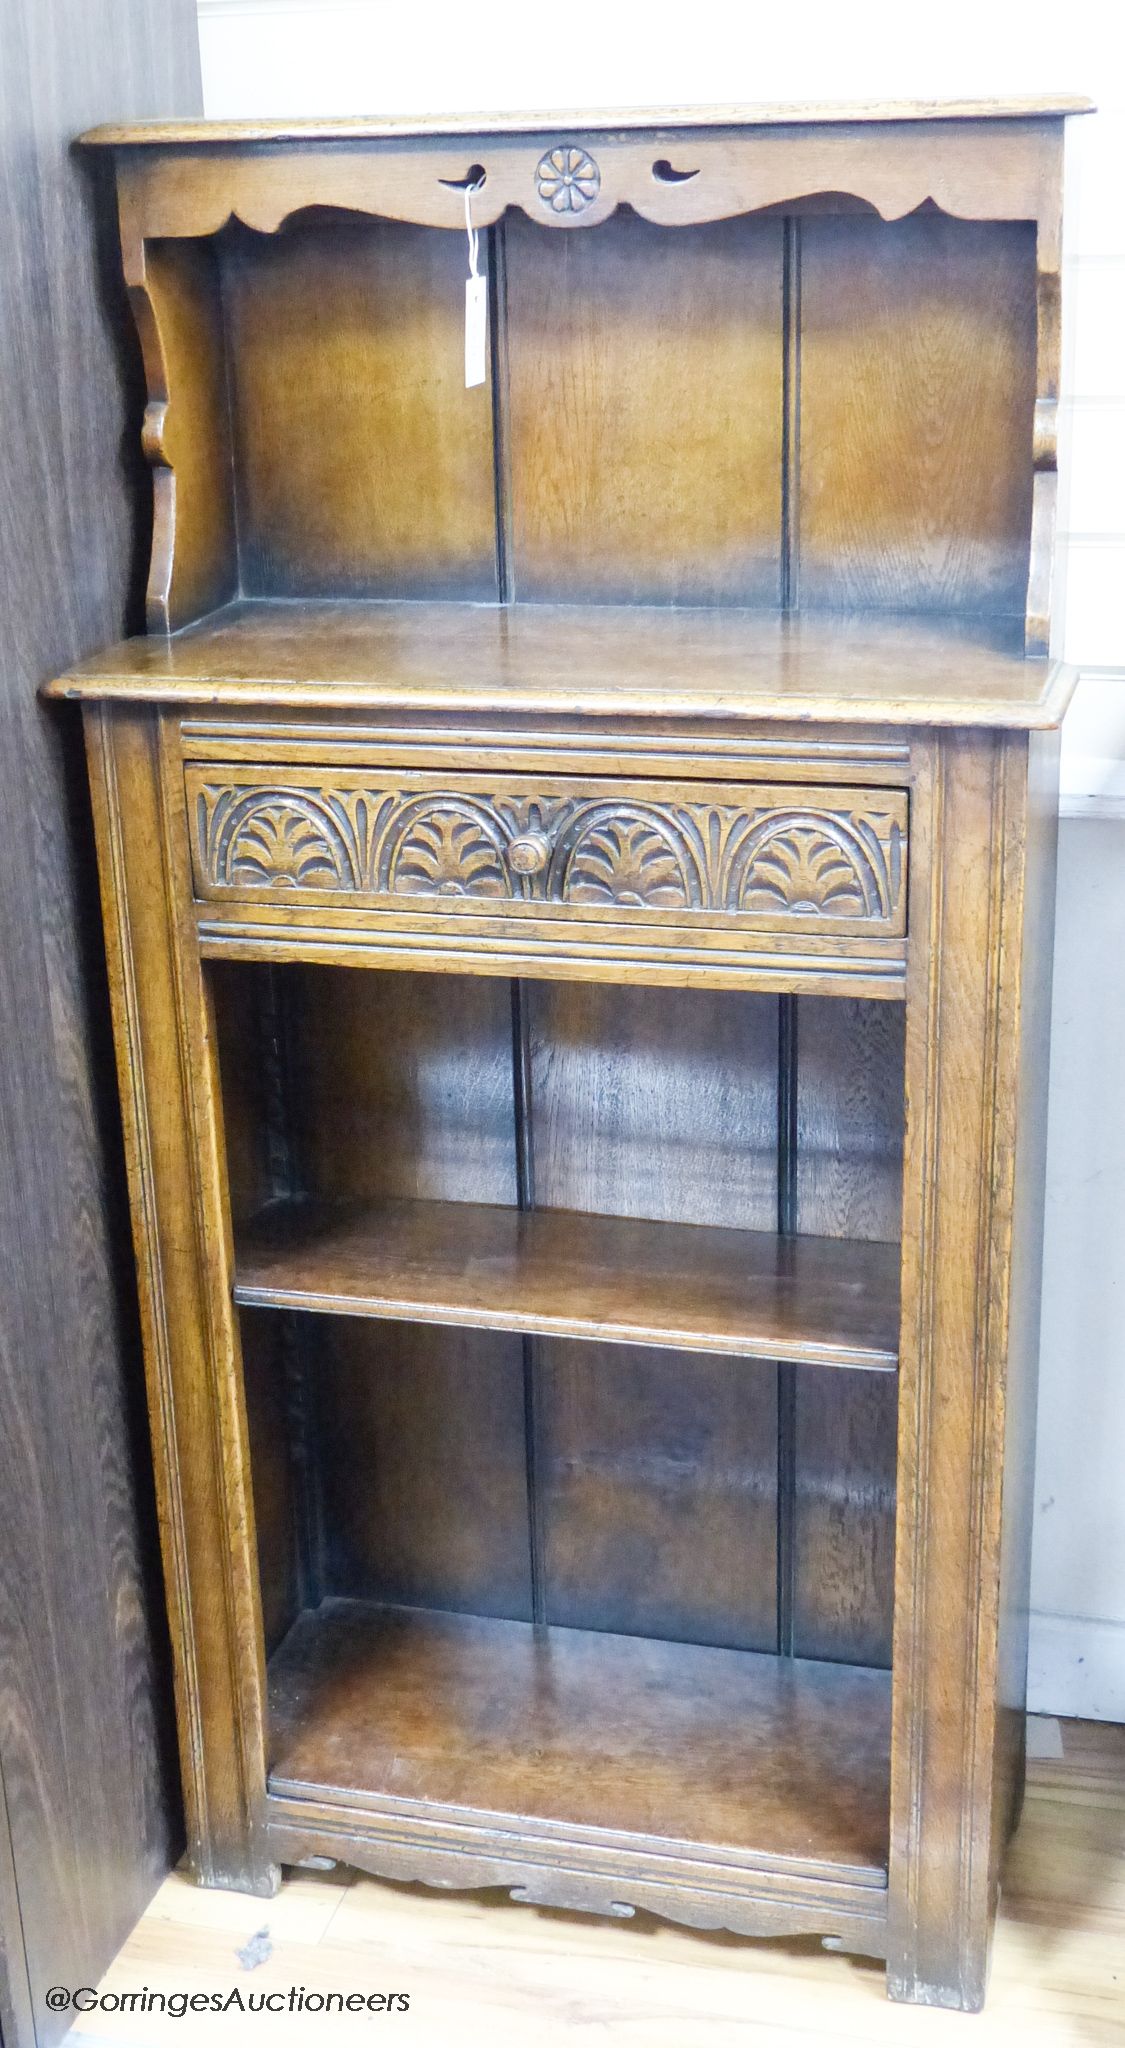 An ‘Ipswich oak’ narrow bookcase, 69 cm wide, 136 cm high, 29 cm deep